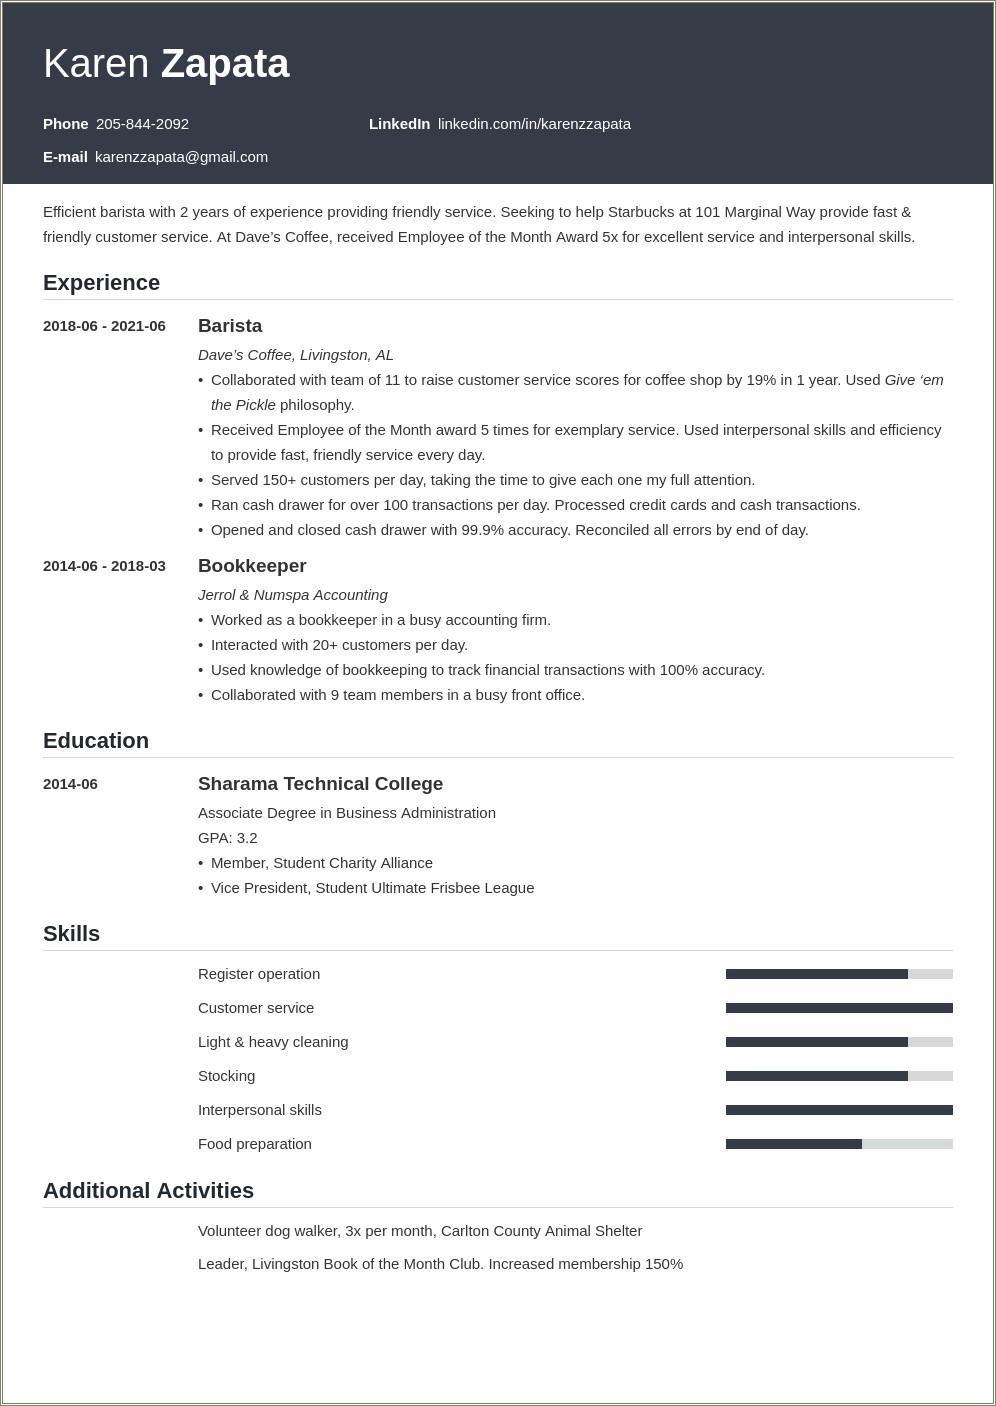 Sample Resume To Apply For Starbucks Jobs